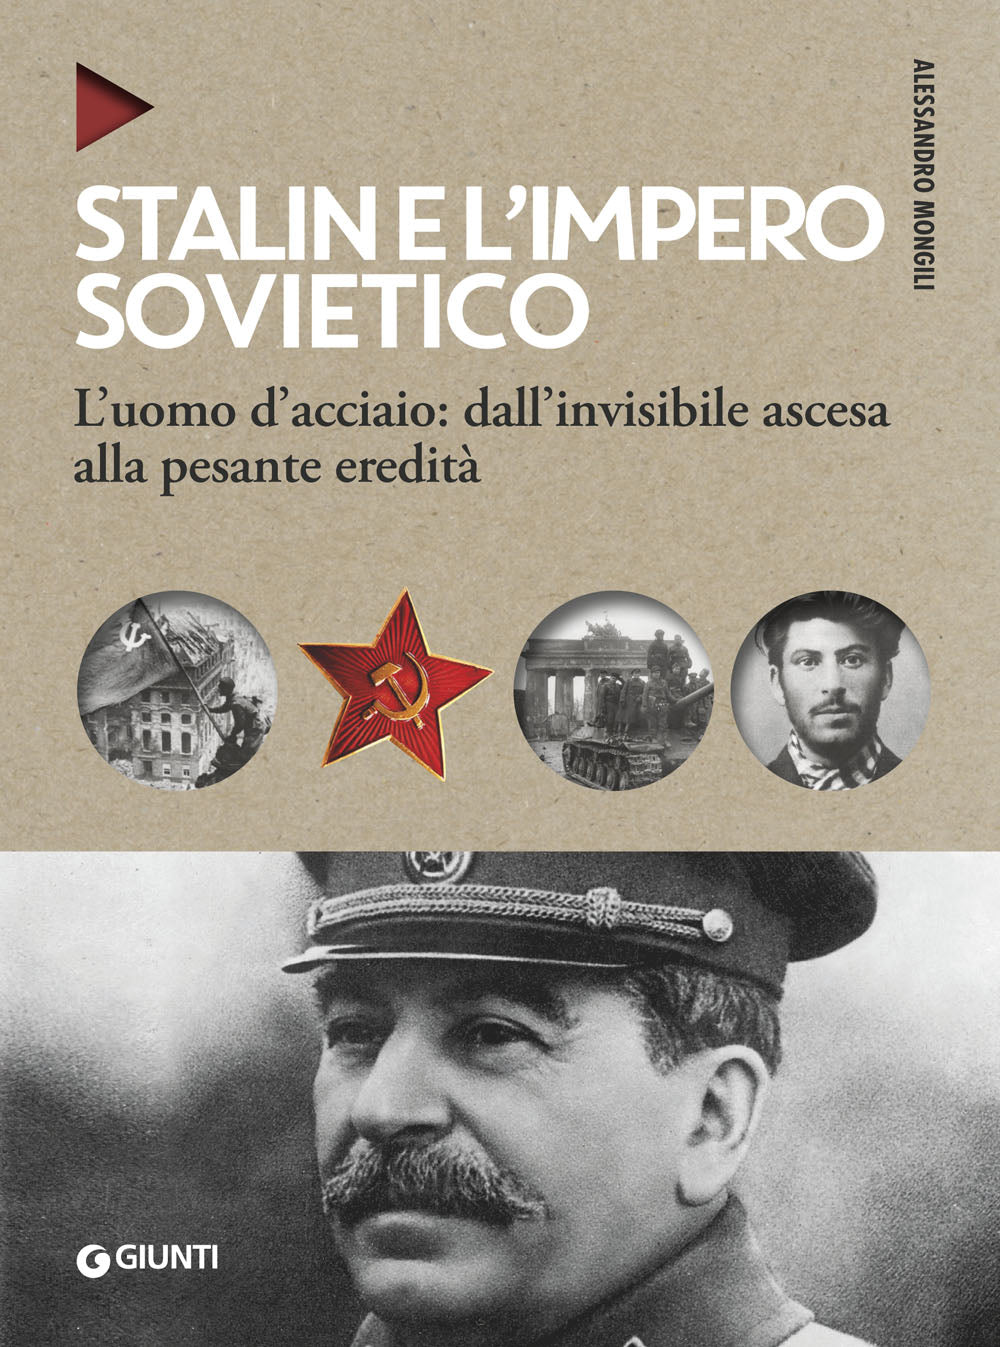 Stalin e l'impero sovietico ::L'uomo d'acciaio: dall'invisibile ascesa alla pesante eredità